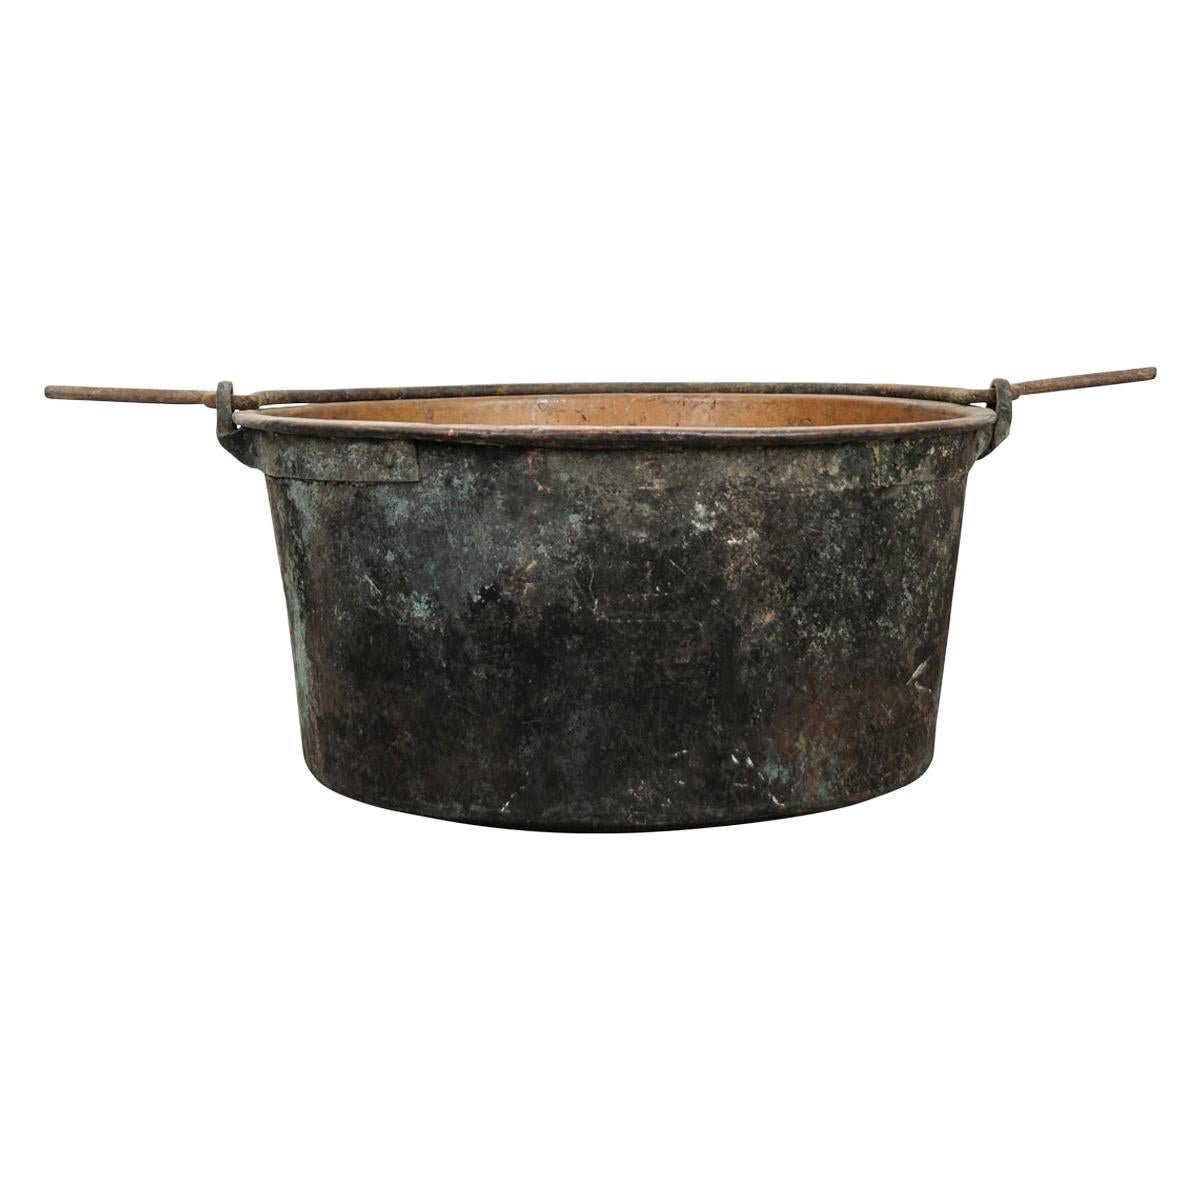 Grand pot en cuivre français avec poignée de suspension en fer